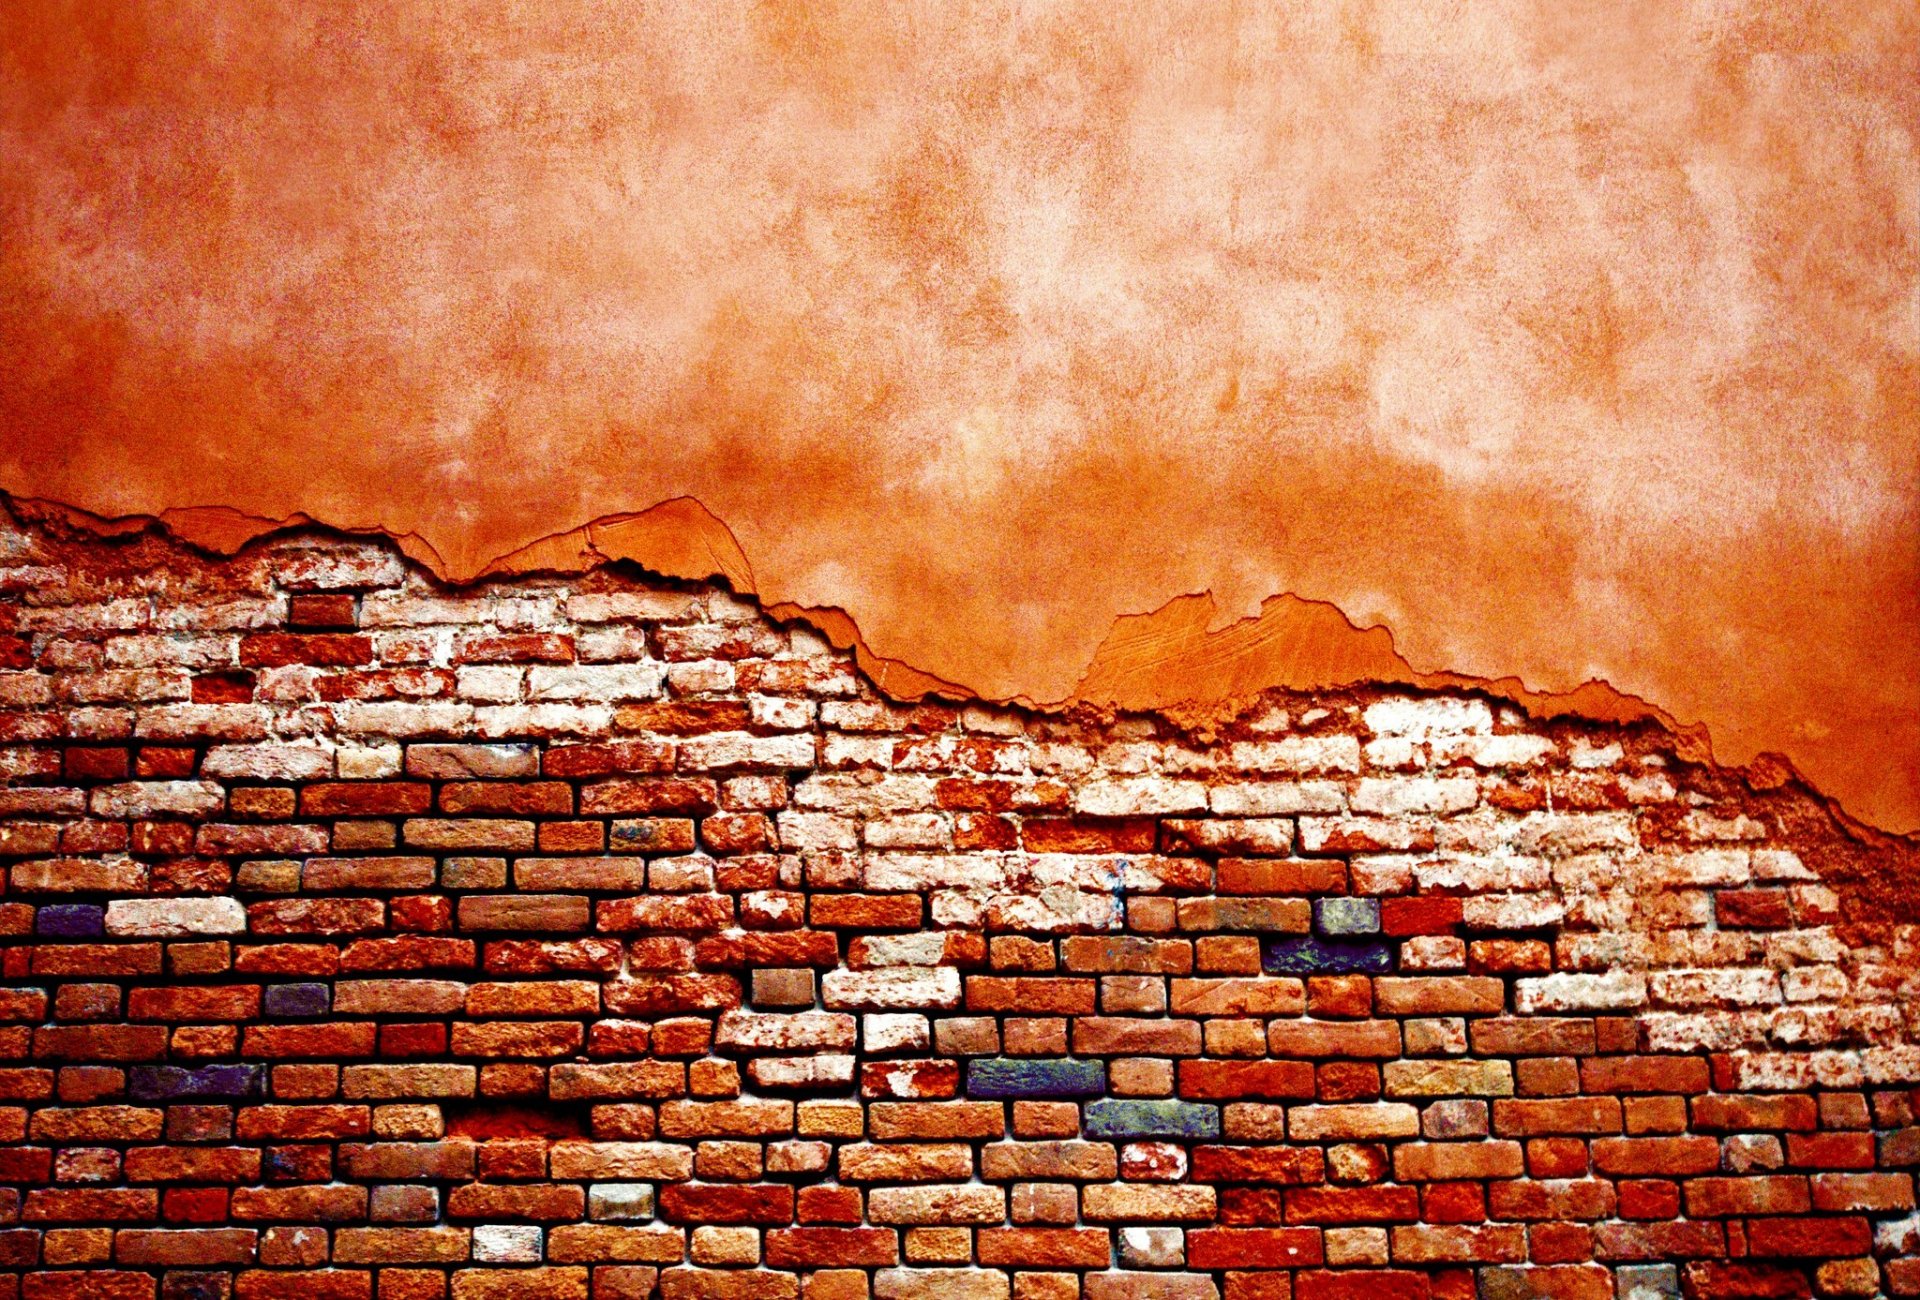 lo sfondo del muro,muratura,mattone,parete,rosso,arancia